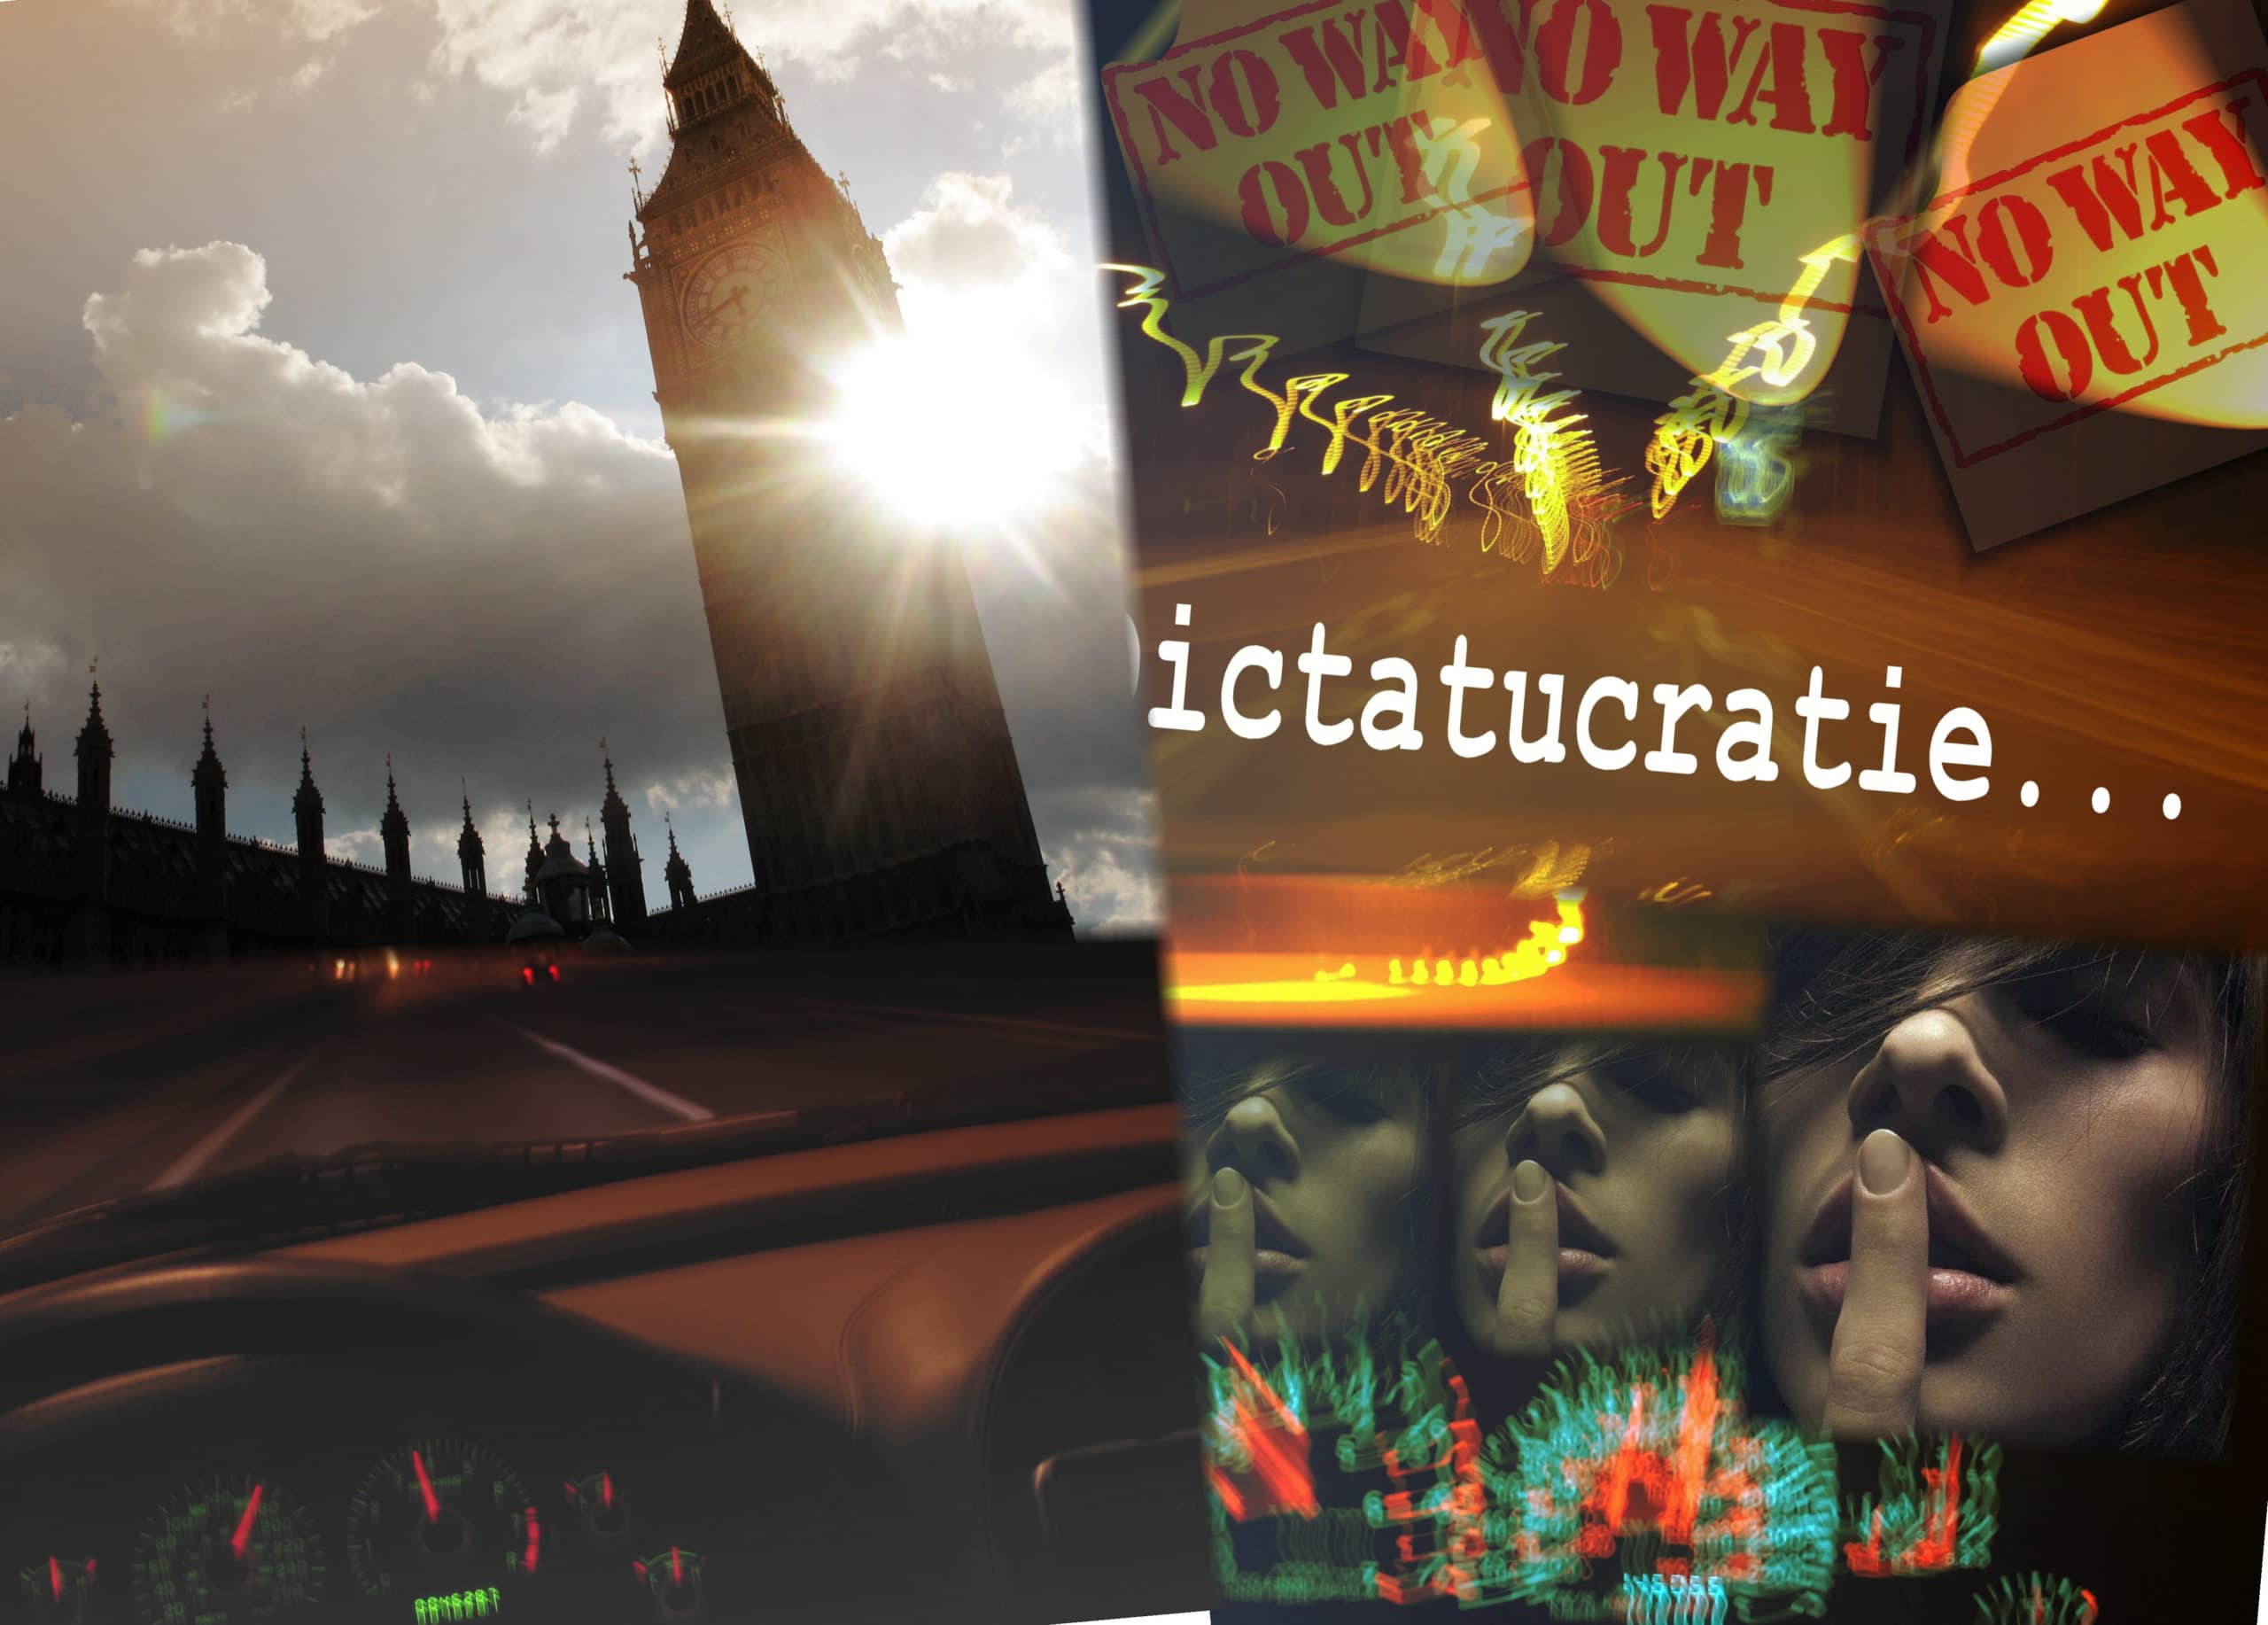 Lintégrale du livre “Dictatucratie”, en exclusivité sur le Web ! image